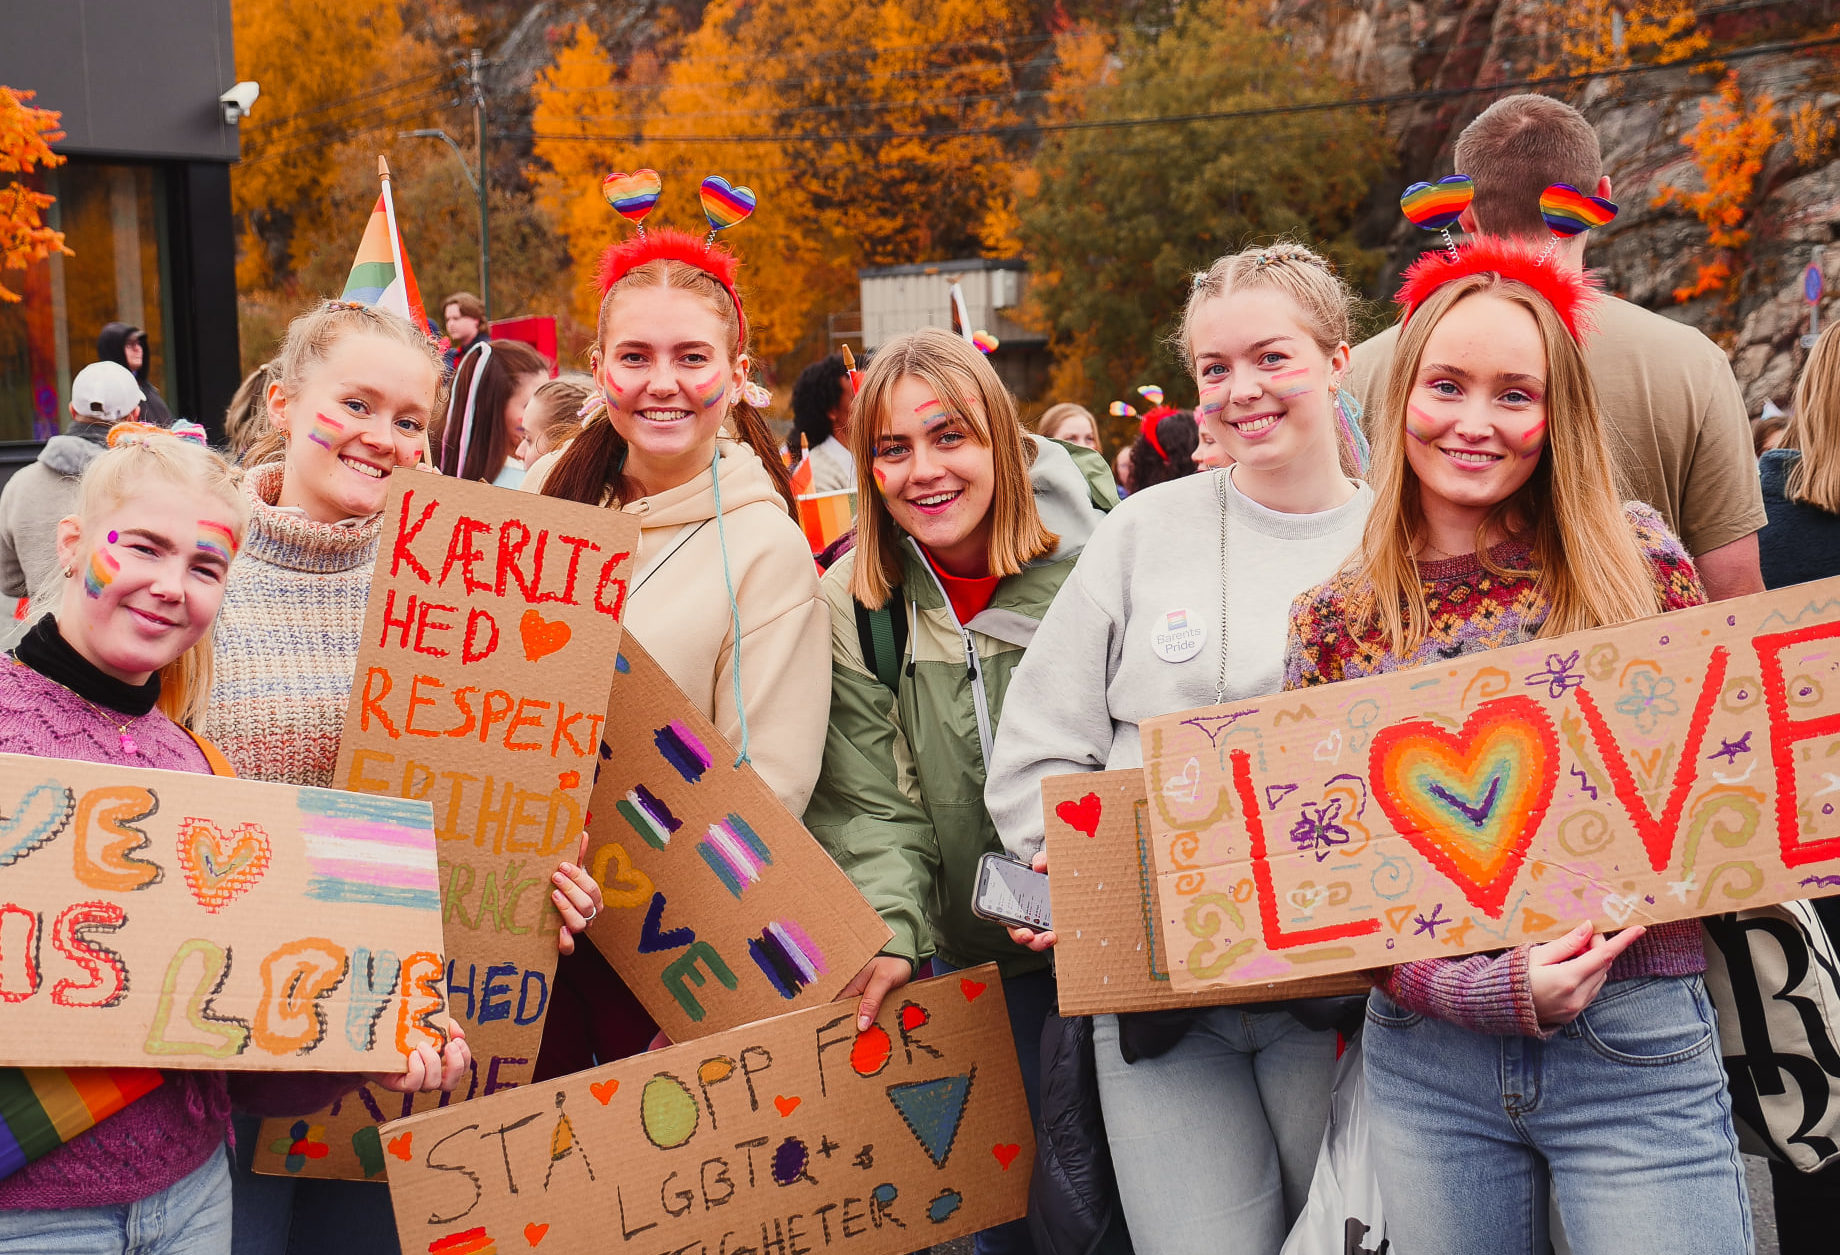 Seks ungekvinner står på rekke og smiler til kamera. De holder fargerike plakater med budskap om kjærlighet. og regnbuefarger. De har pyntet seg med prideeffekter. Bak dem er flere mennesker og trær med gult løv.